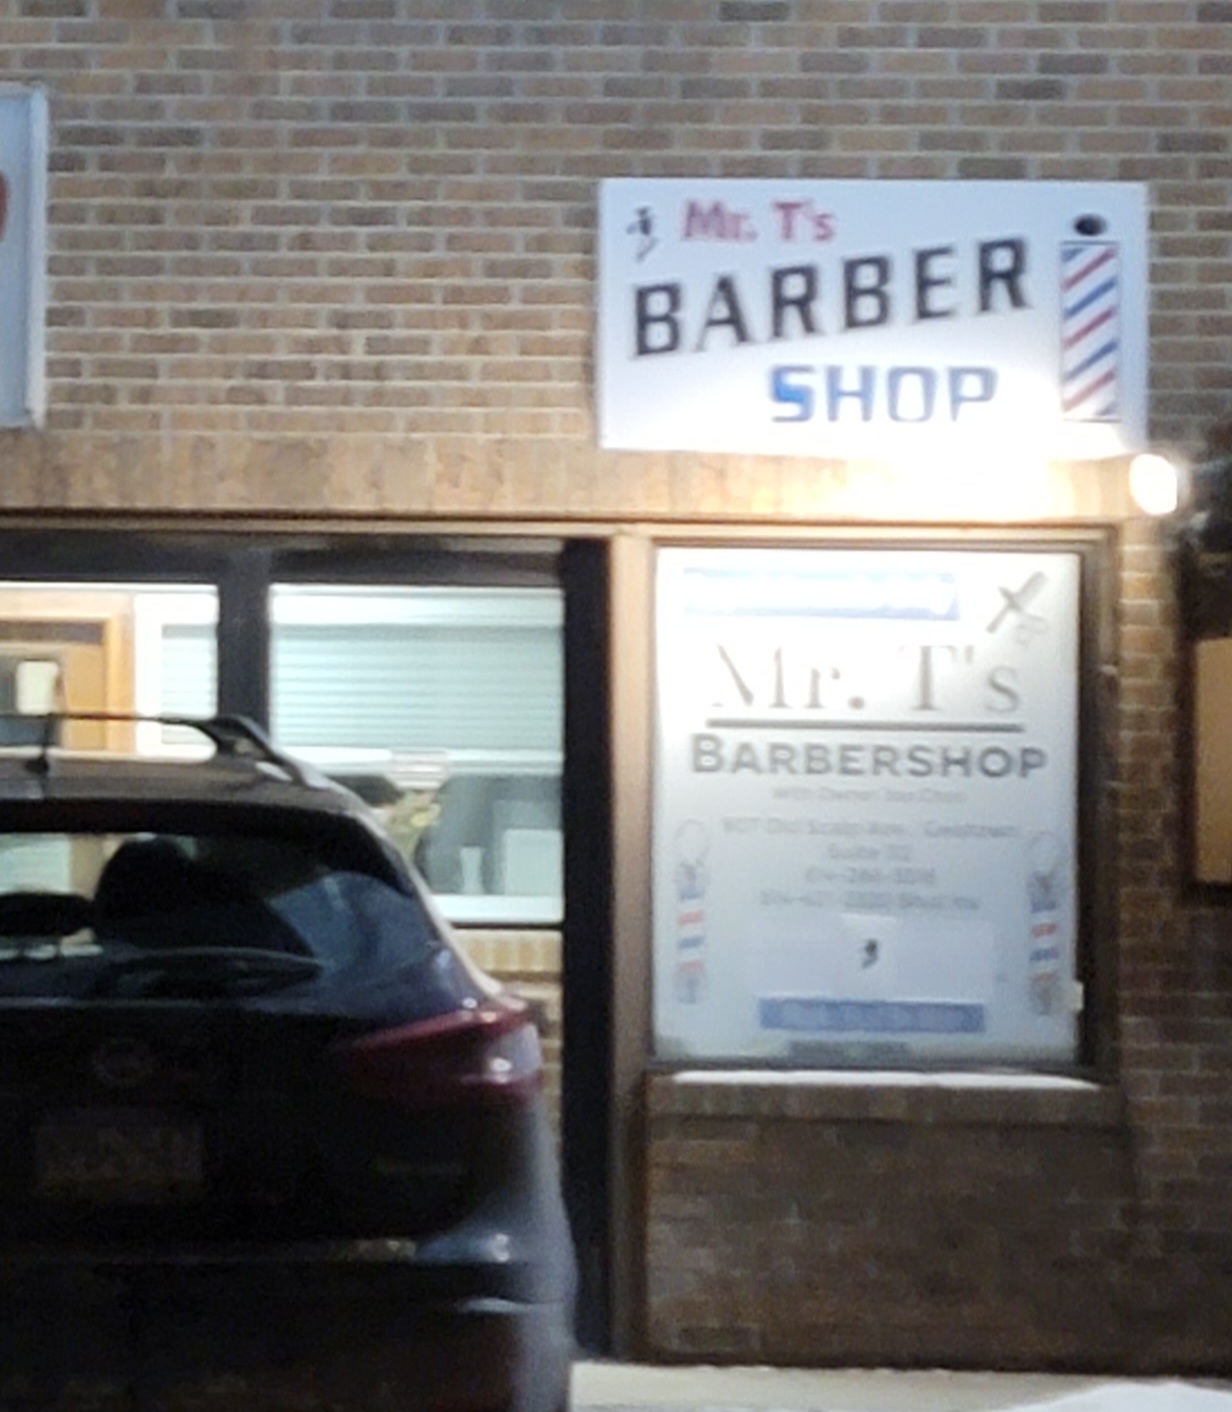 Mr T's Barber Shop